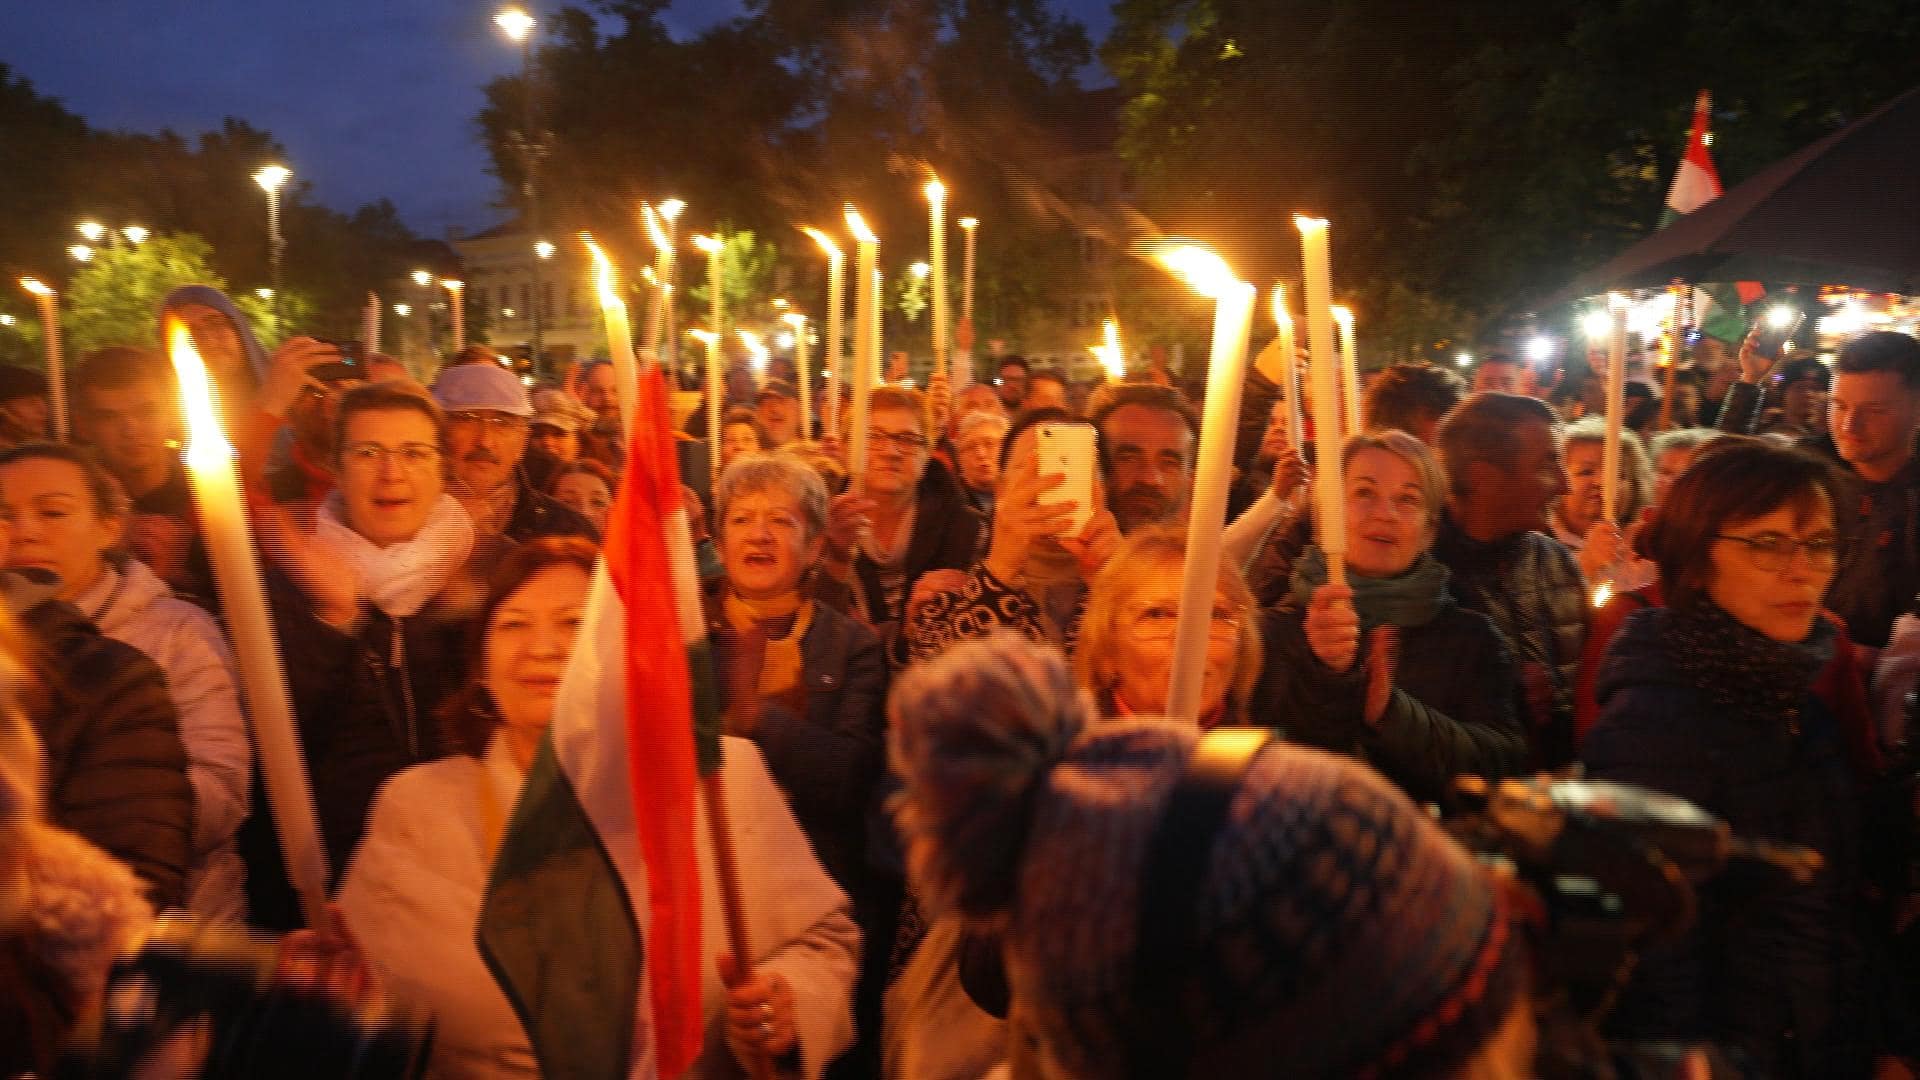 Reportage in Ungheria, manifestazione in piazza  organizzata da Peter Magyar